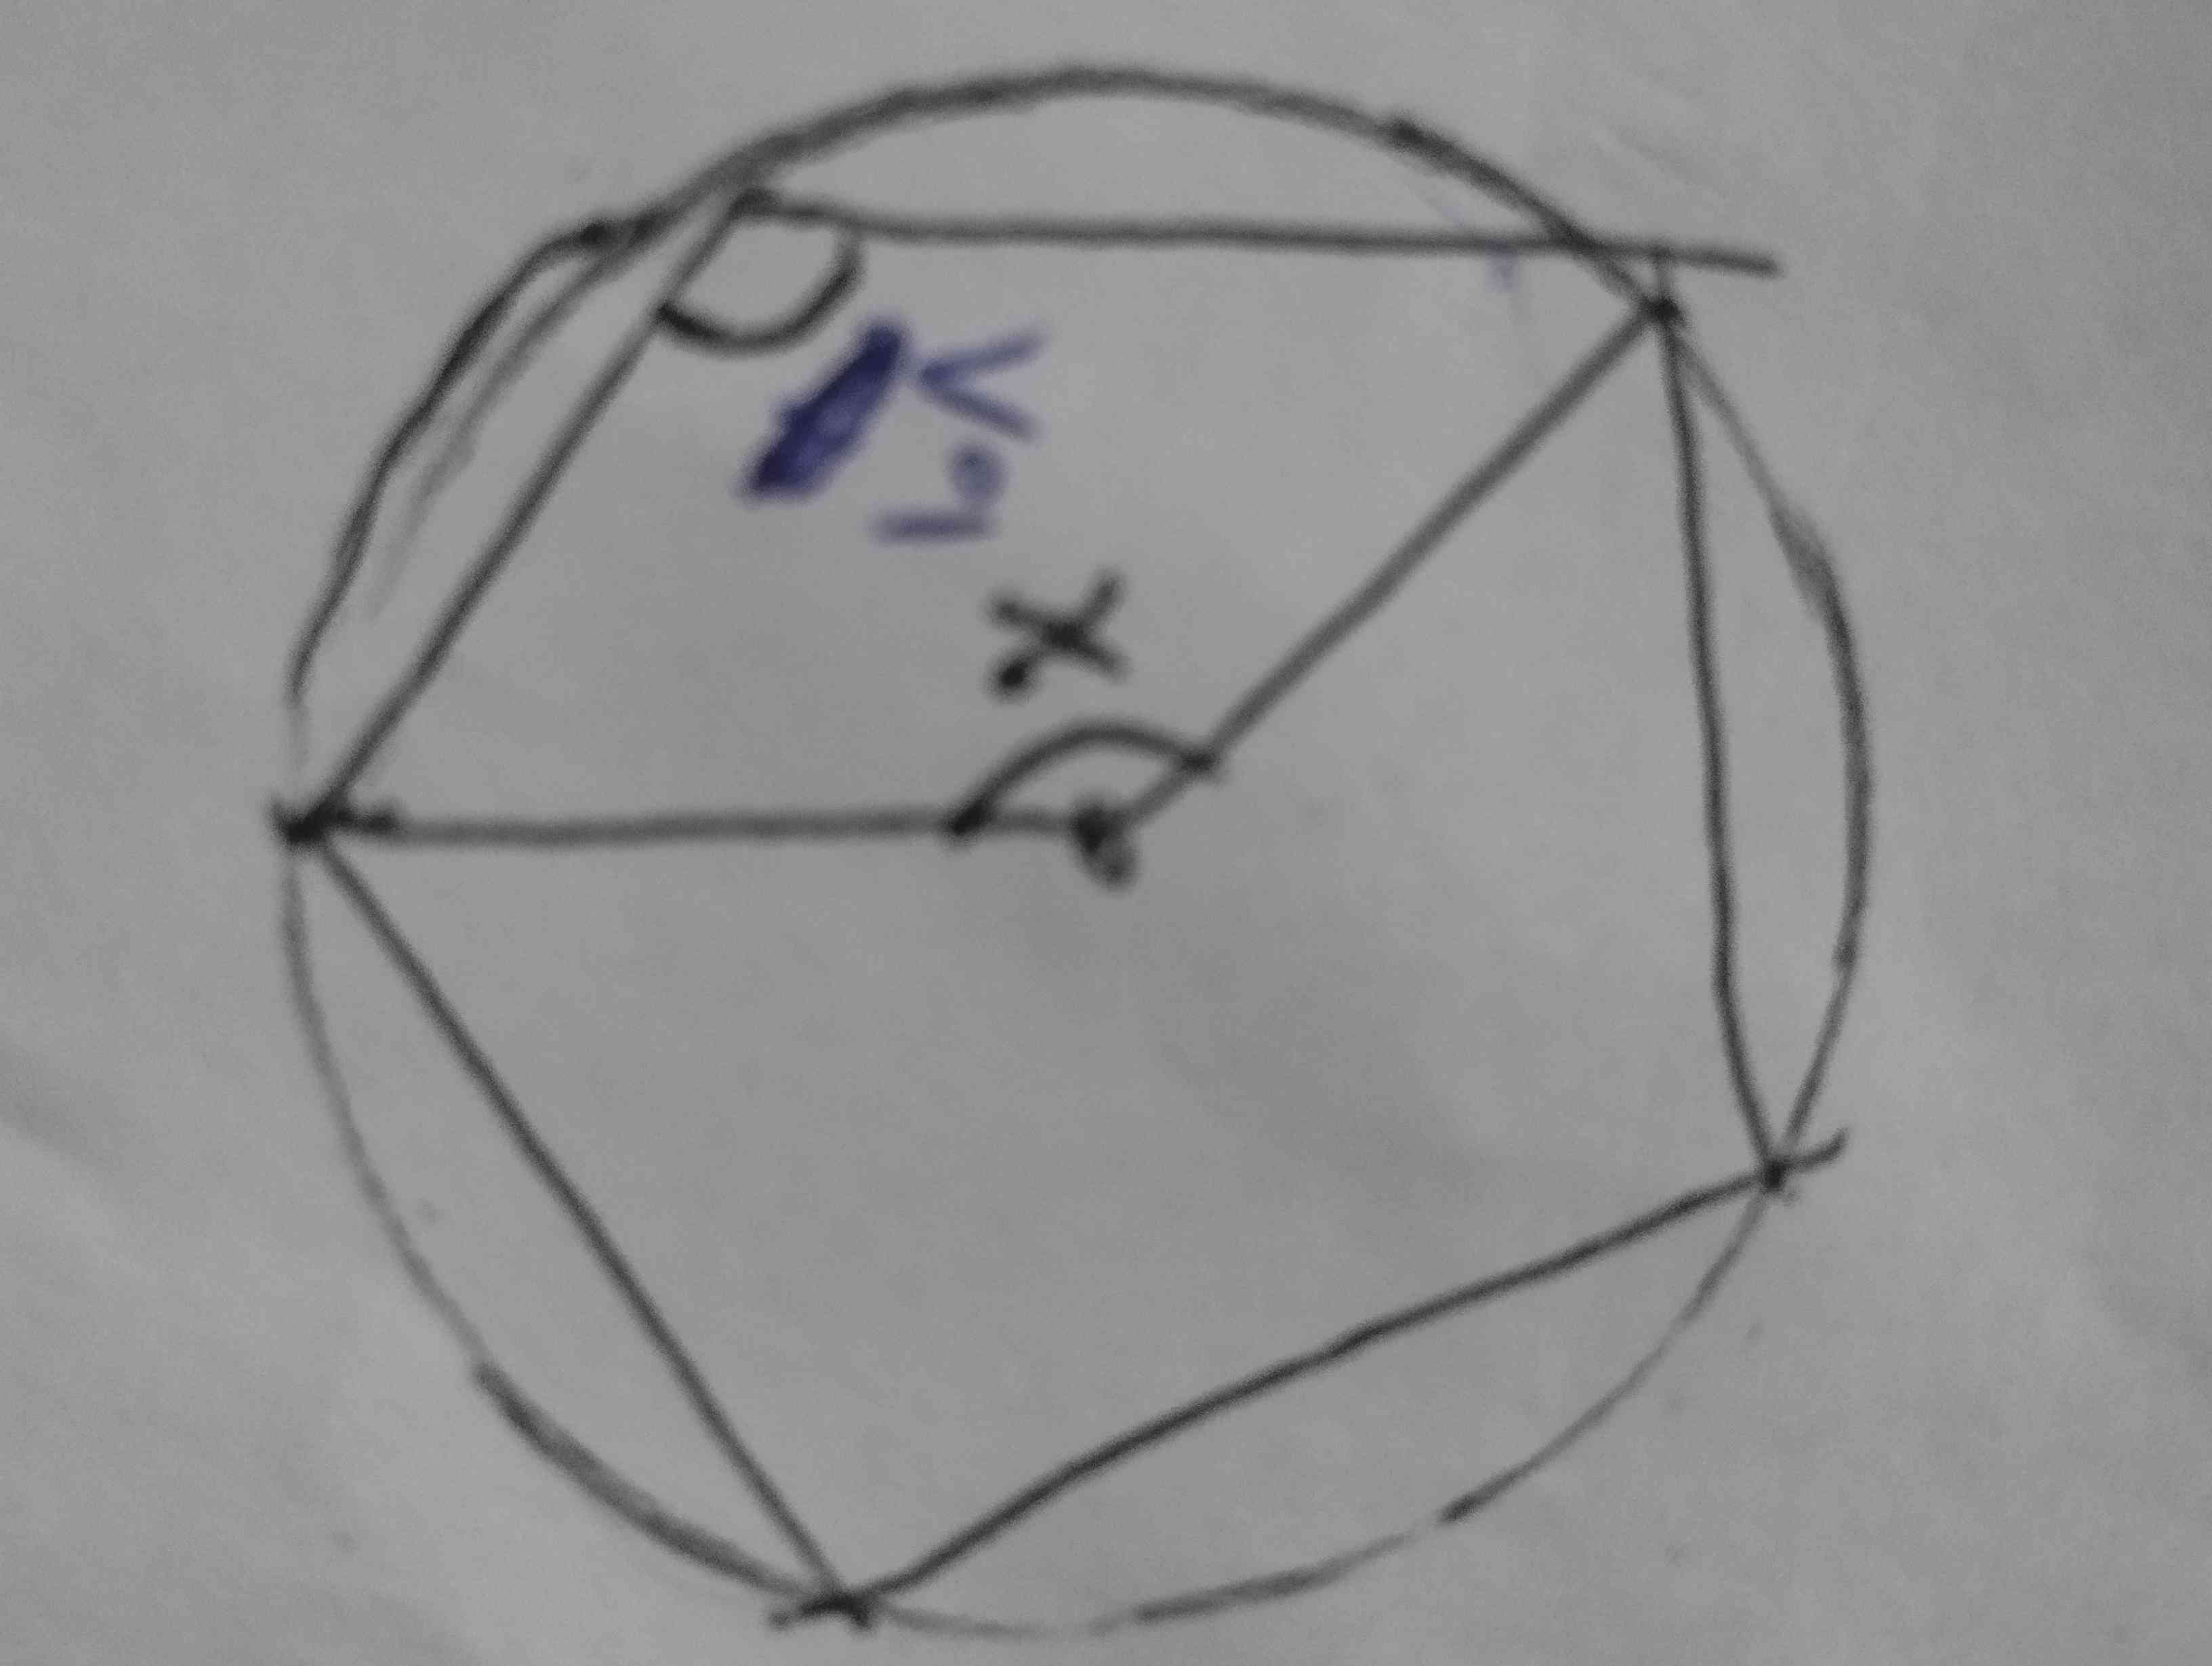 بچه ها یکی اینو توضیح بده فقط بگم که پنج ضلعی منتظم هست بخاطر همین 108 گذاشتم